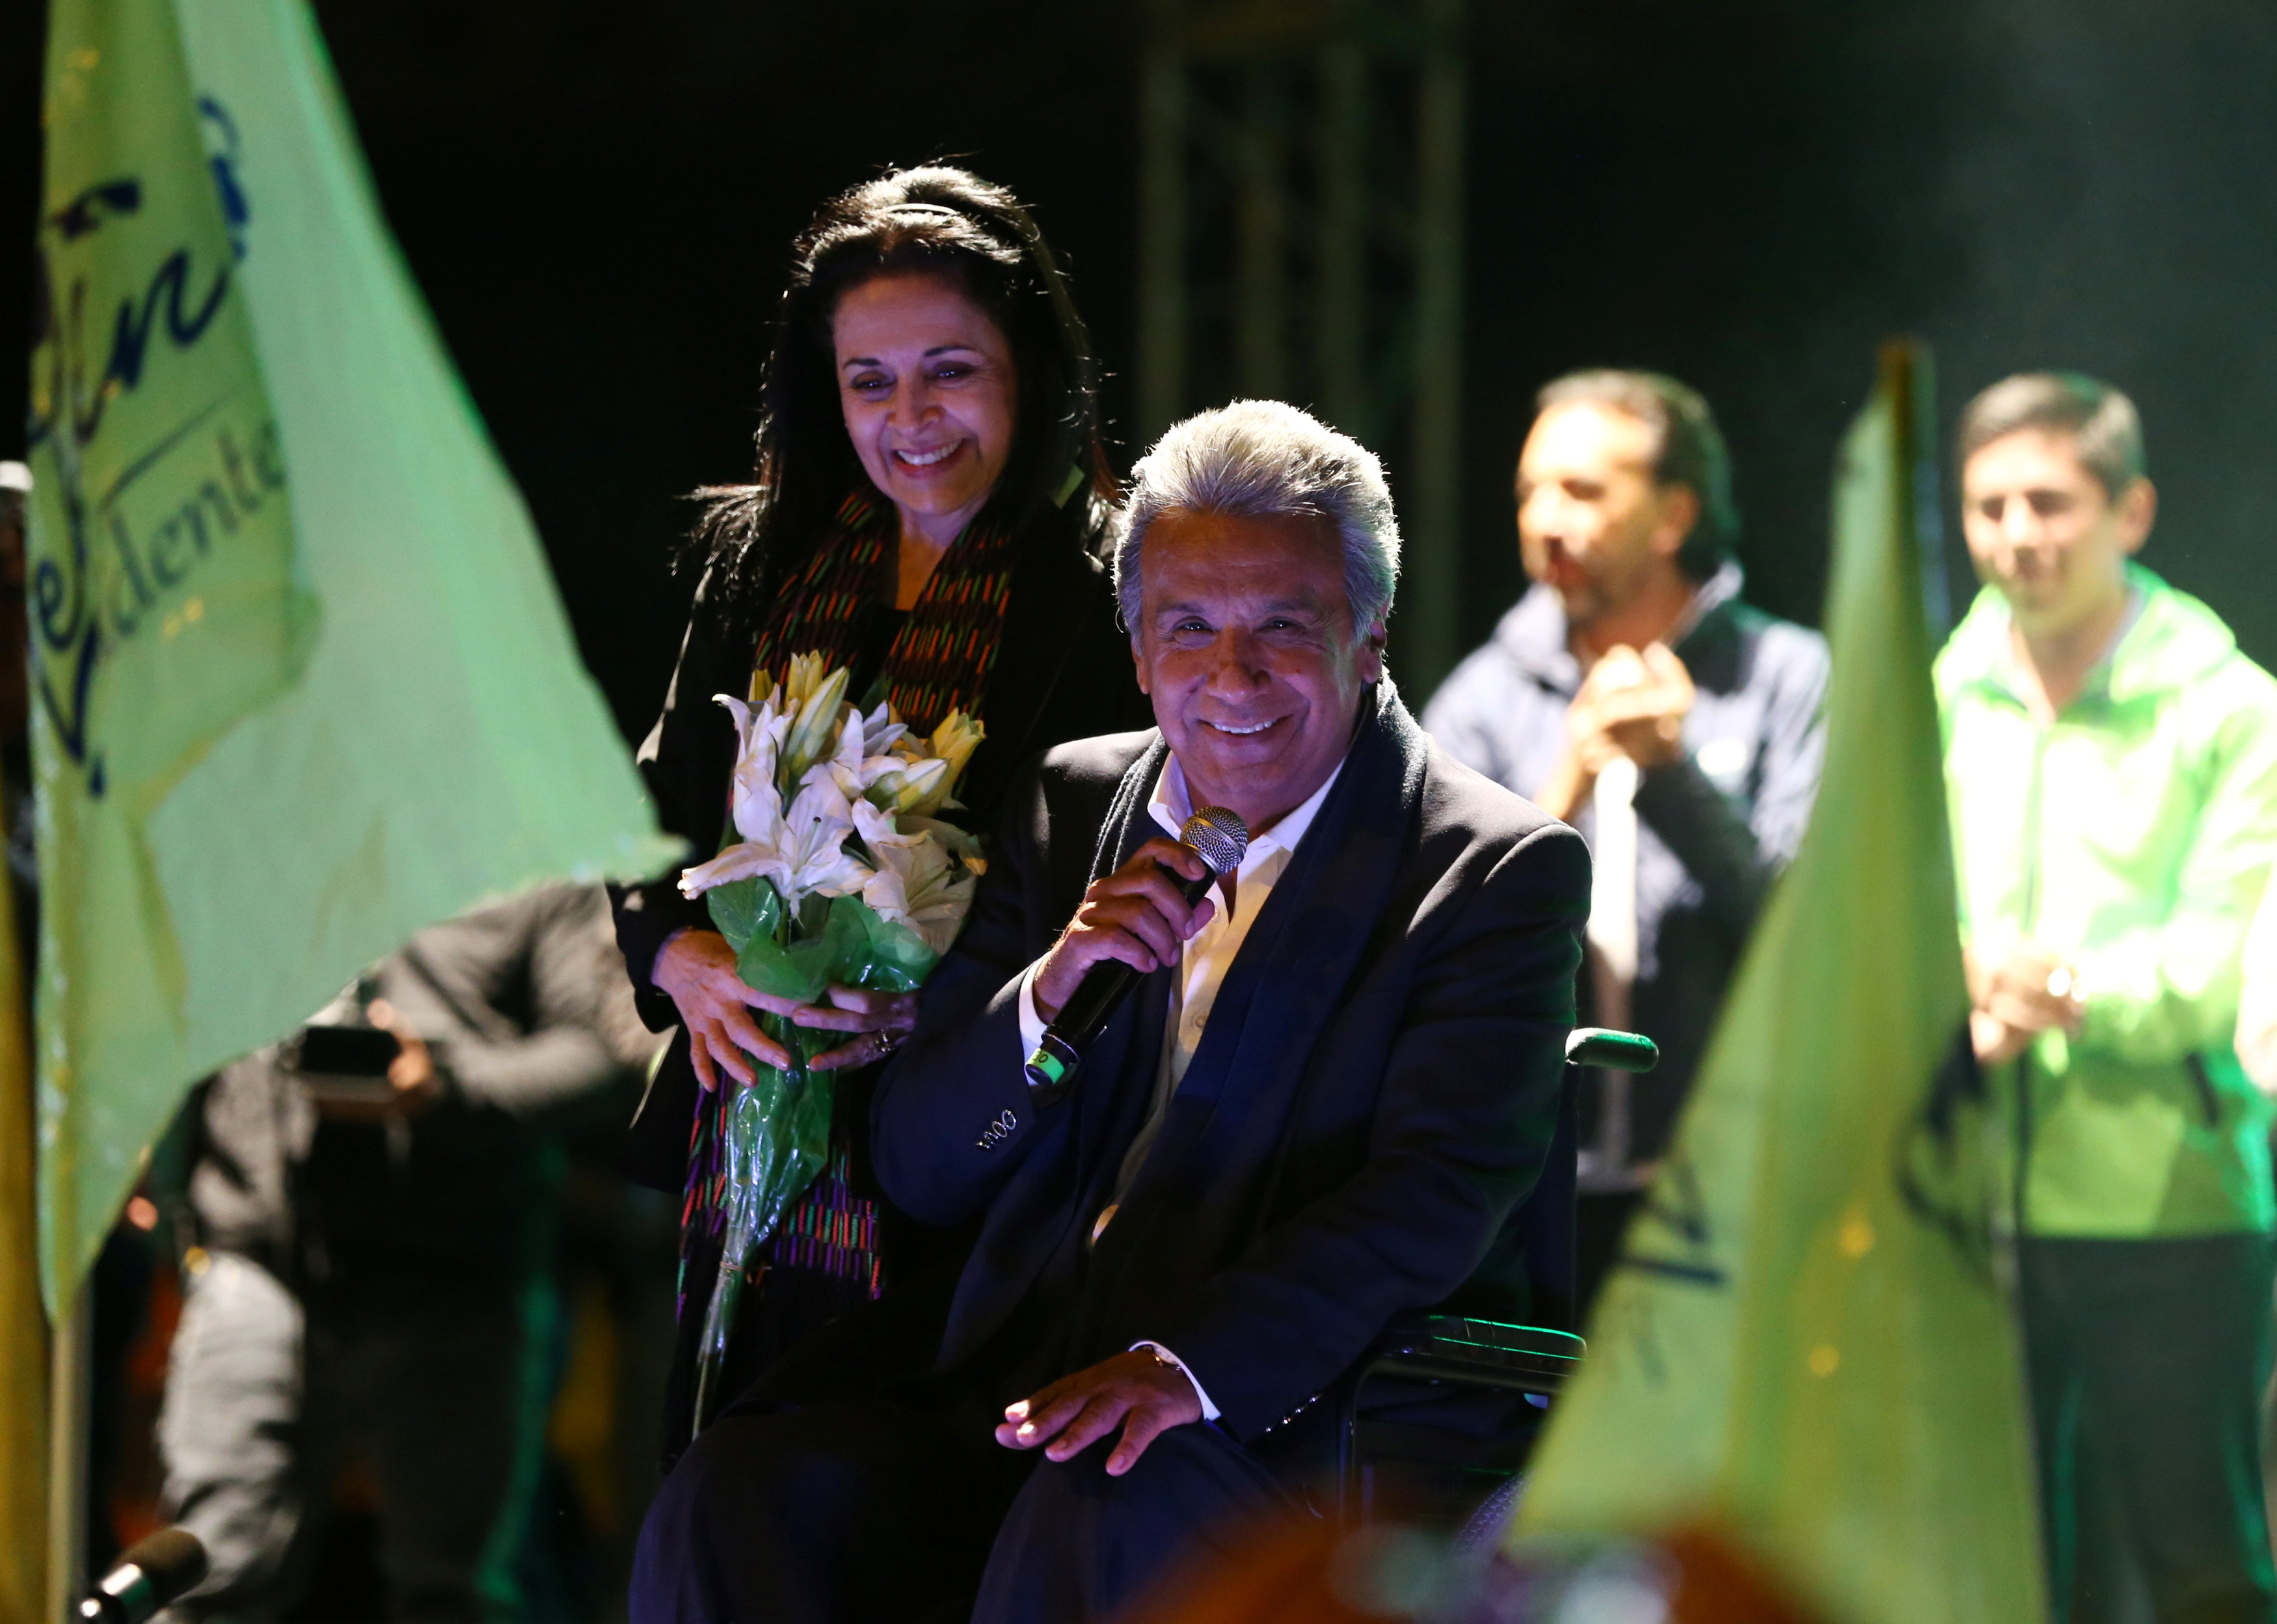 المرشح لرئاسة الإكوادور لينين مورينو يحتفل مع زوجته بتقدمه فى النتائج الأولية للانتخابات